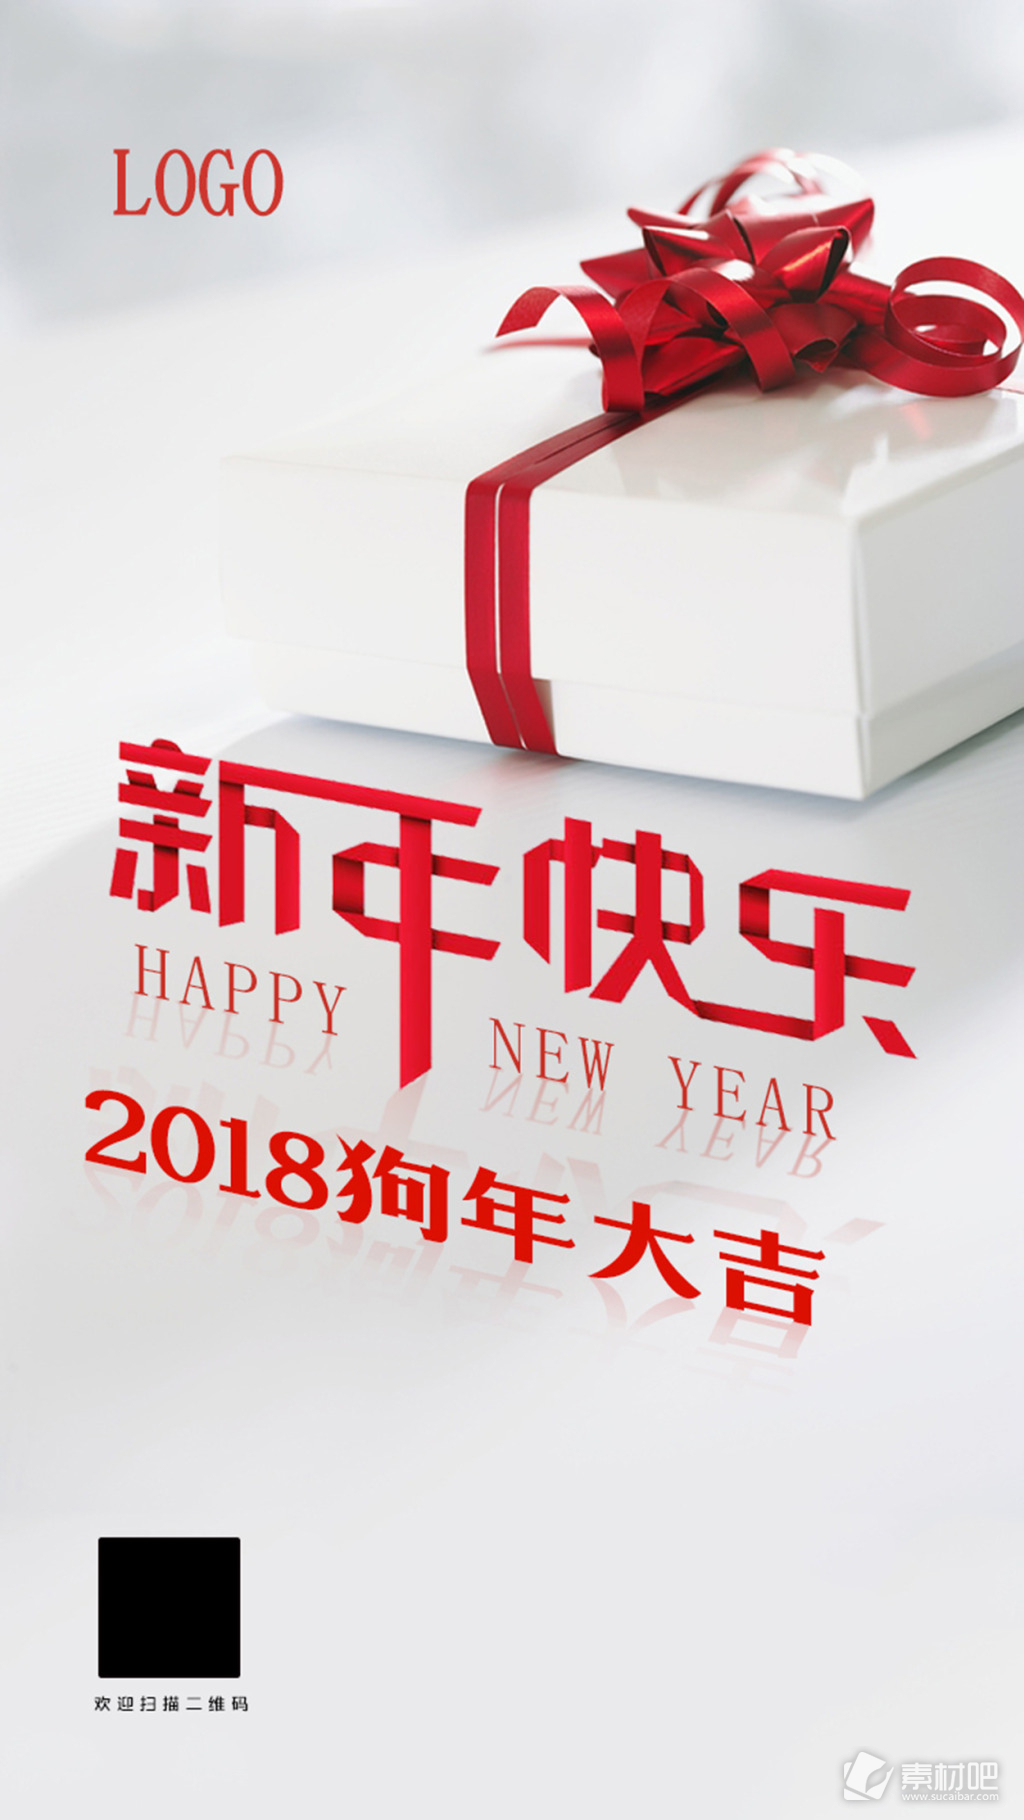 2018狗年大吉新年快乐海报